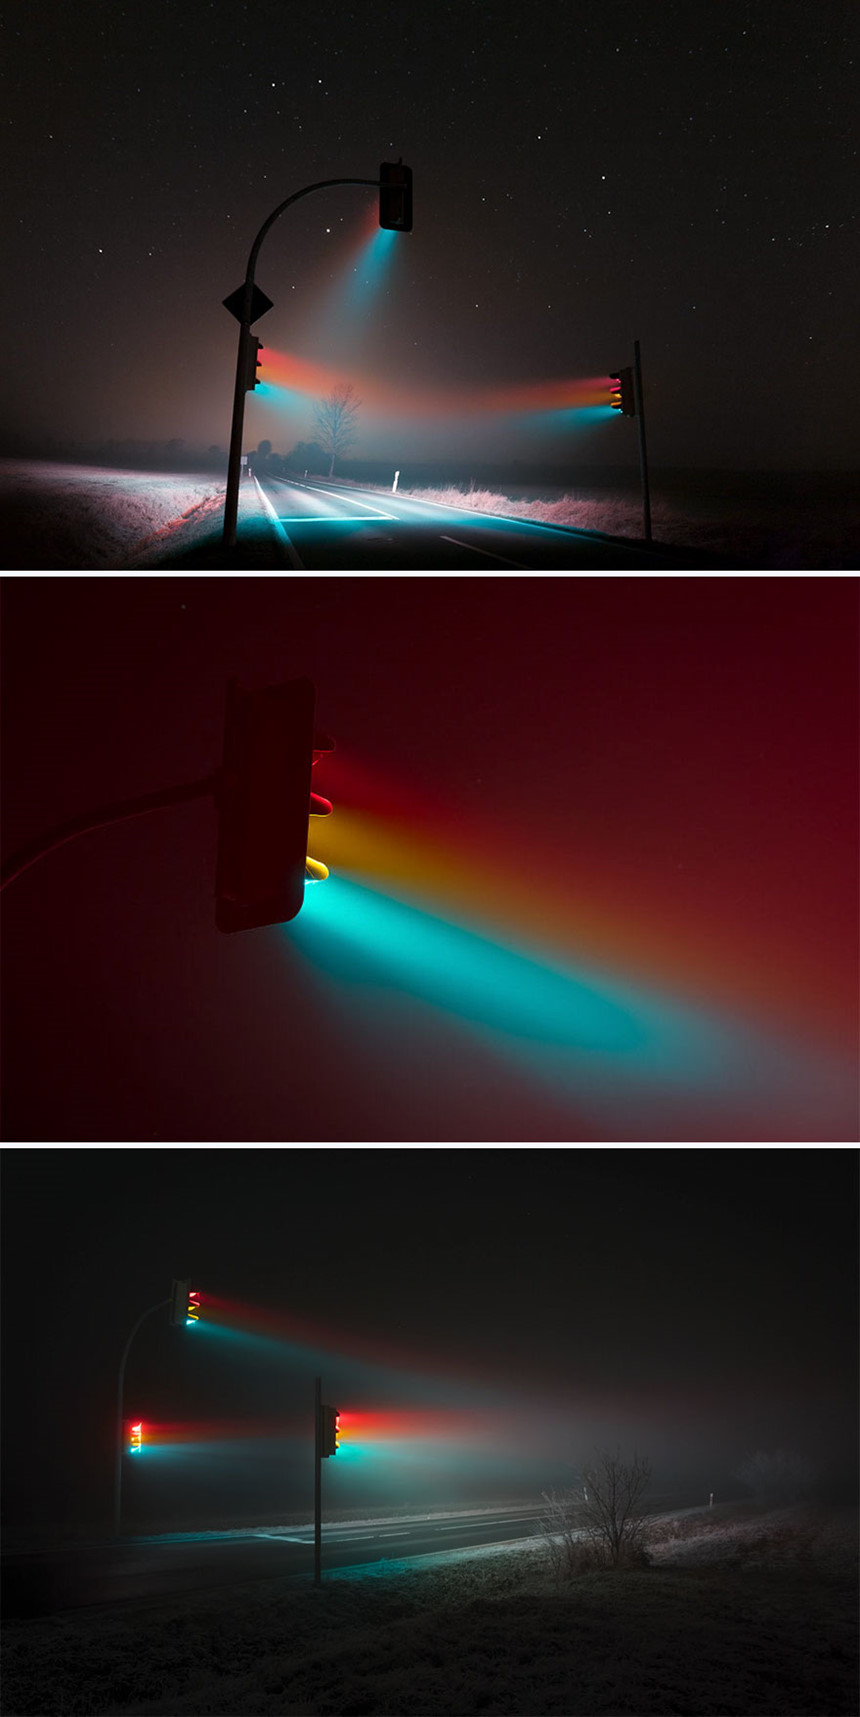 Đã bao giờ bạn nghĩ đèn tín hiệu giao thông cũng tạo ra những hiệu ứng huyền ảo thế này chưa?